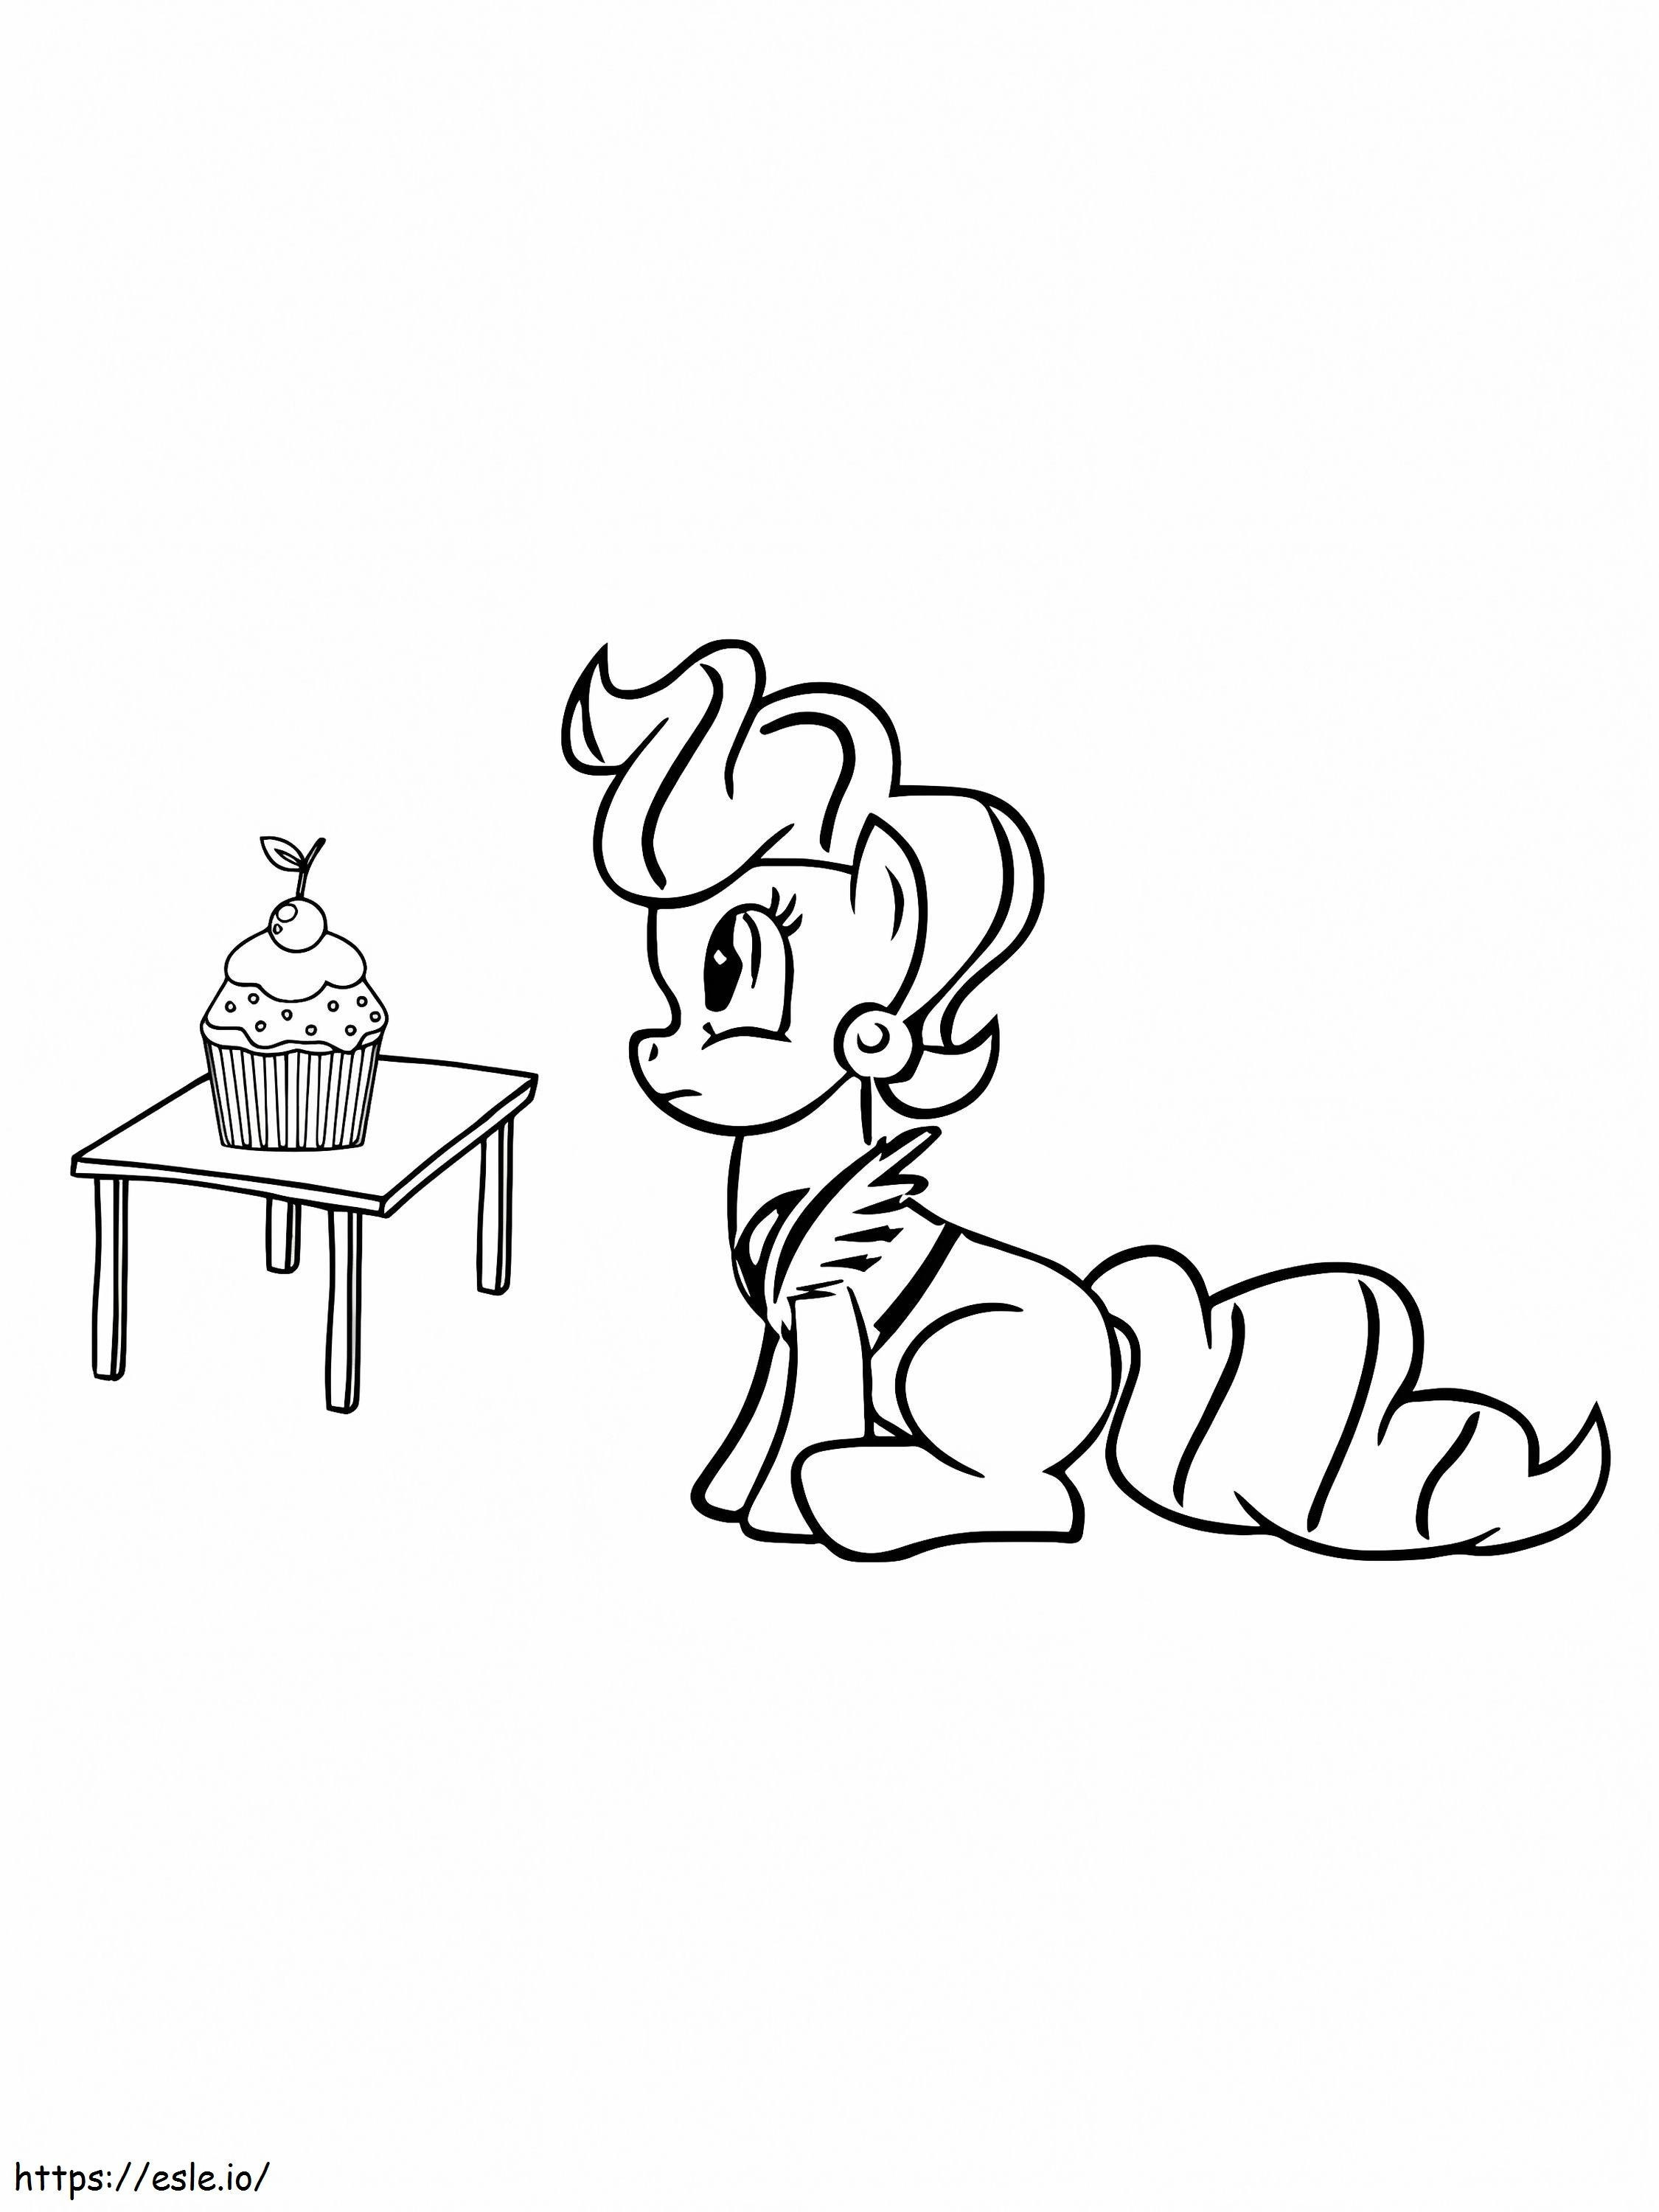 Mein kleines Pony, Frau Kuchen und Cupcake auf dem Tisch ausmalbilder